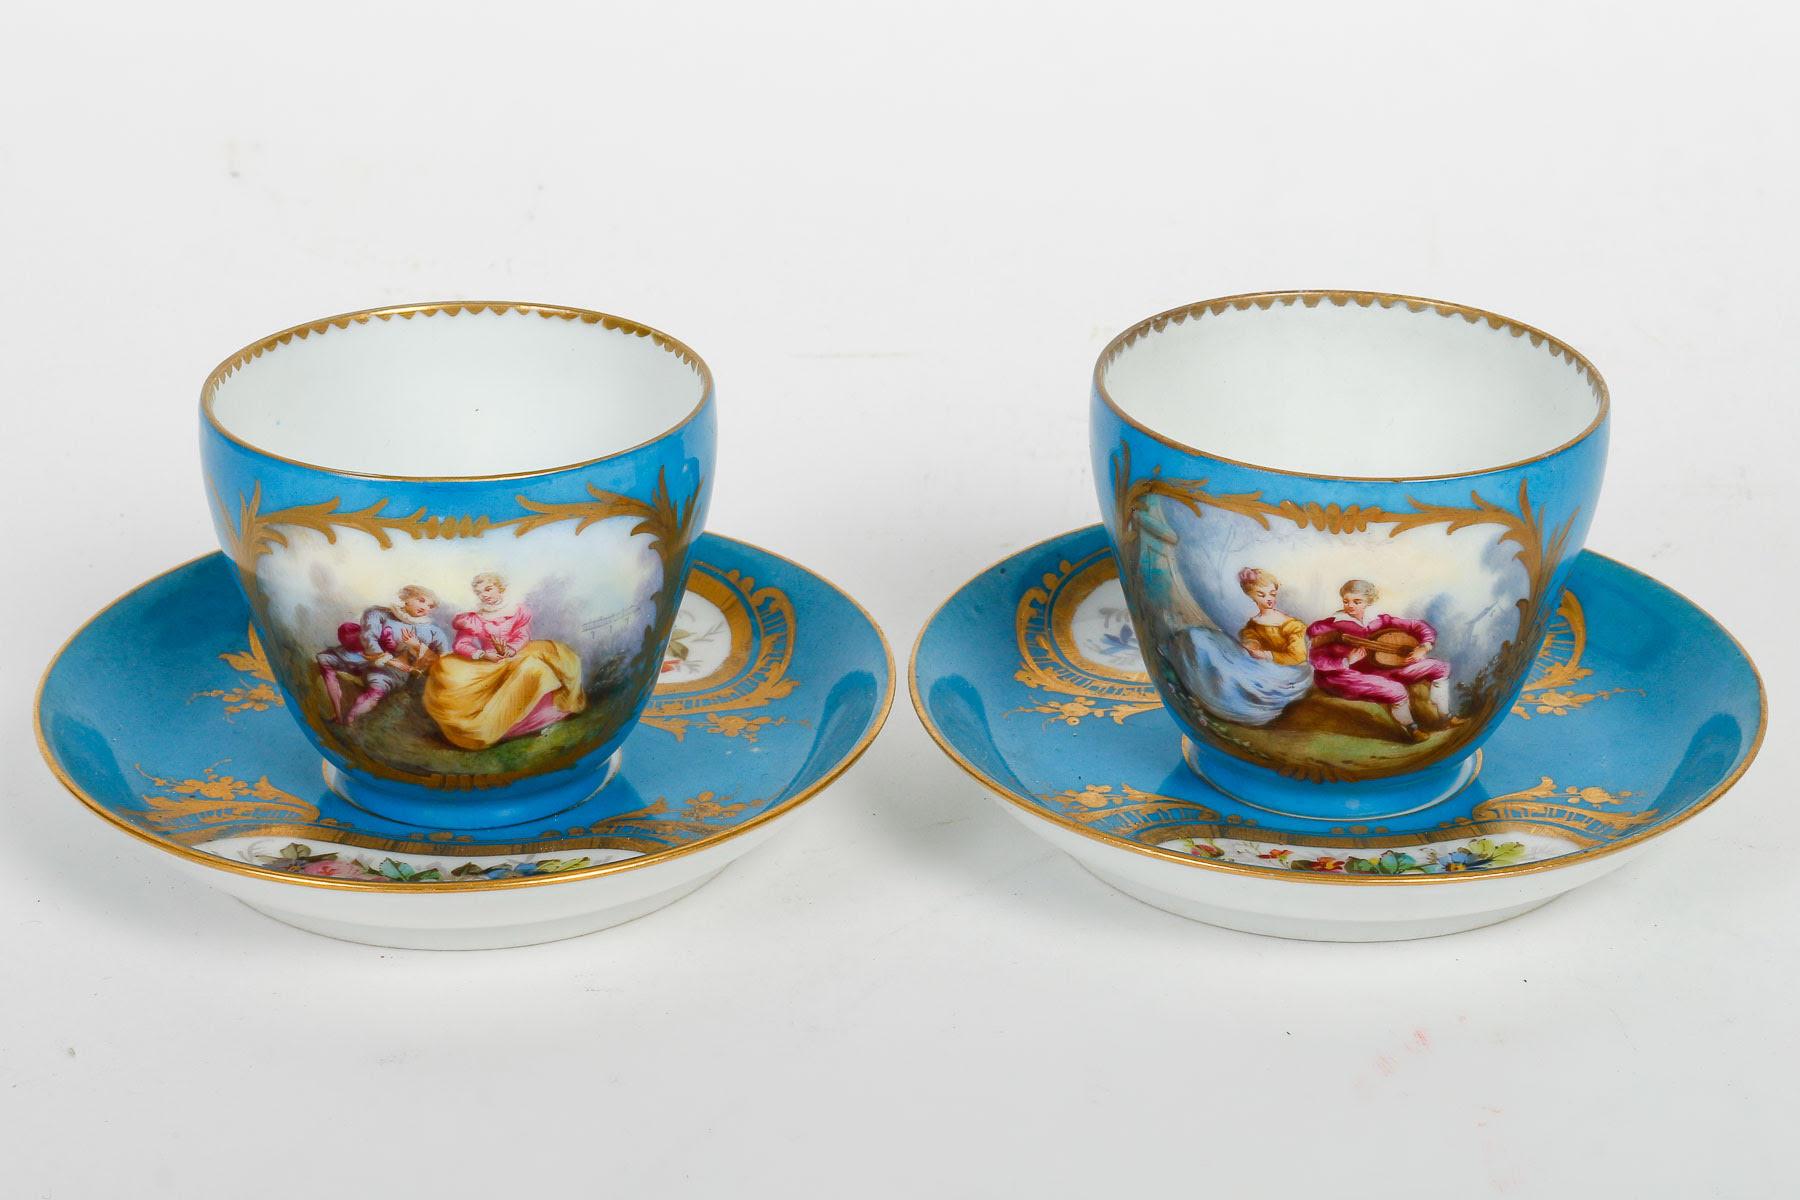 Tête-à-tête, Tea Service, Sèvres Porcelain, Napoleon III Period. For Sale 4